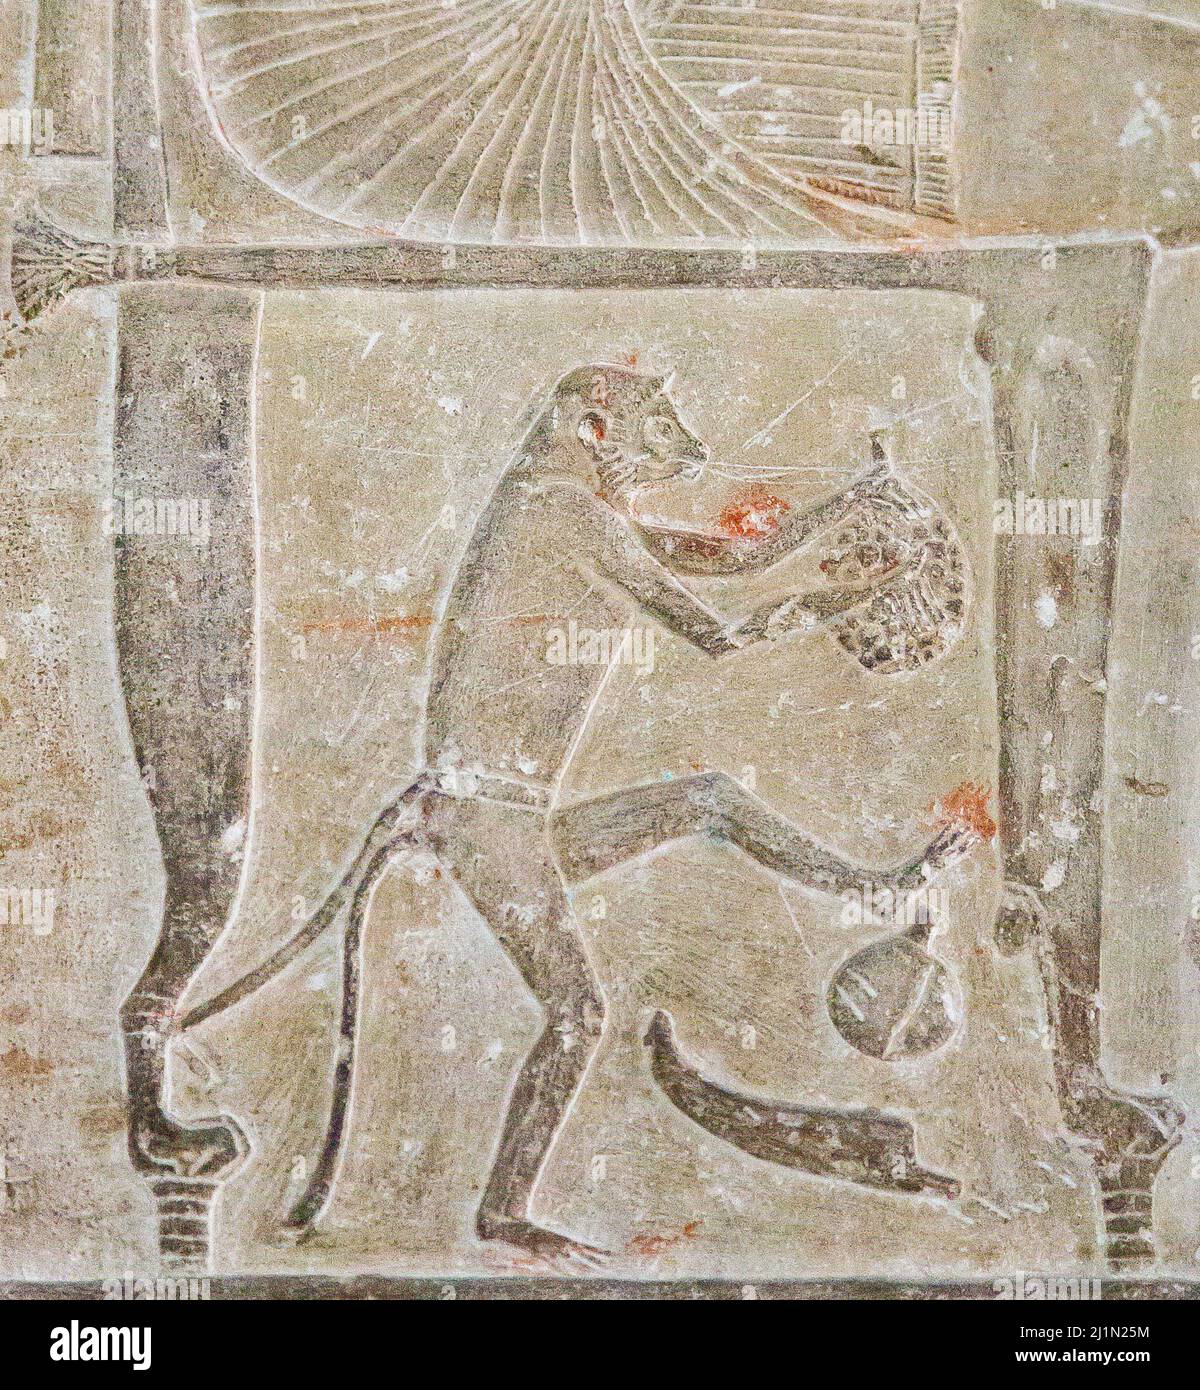 El Cairo, Museo Egipcio, de Saqqara, tumba de Ptahmose. Bajo la silla del difunto, un mono pequeño está comiendo frutas. Foto de stock